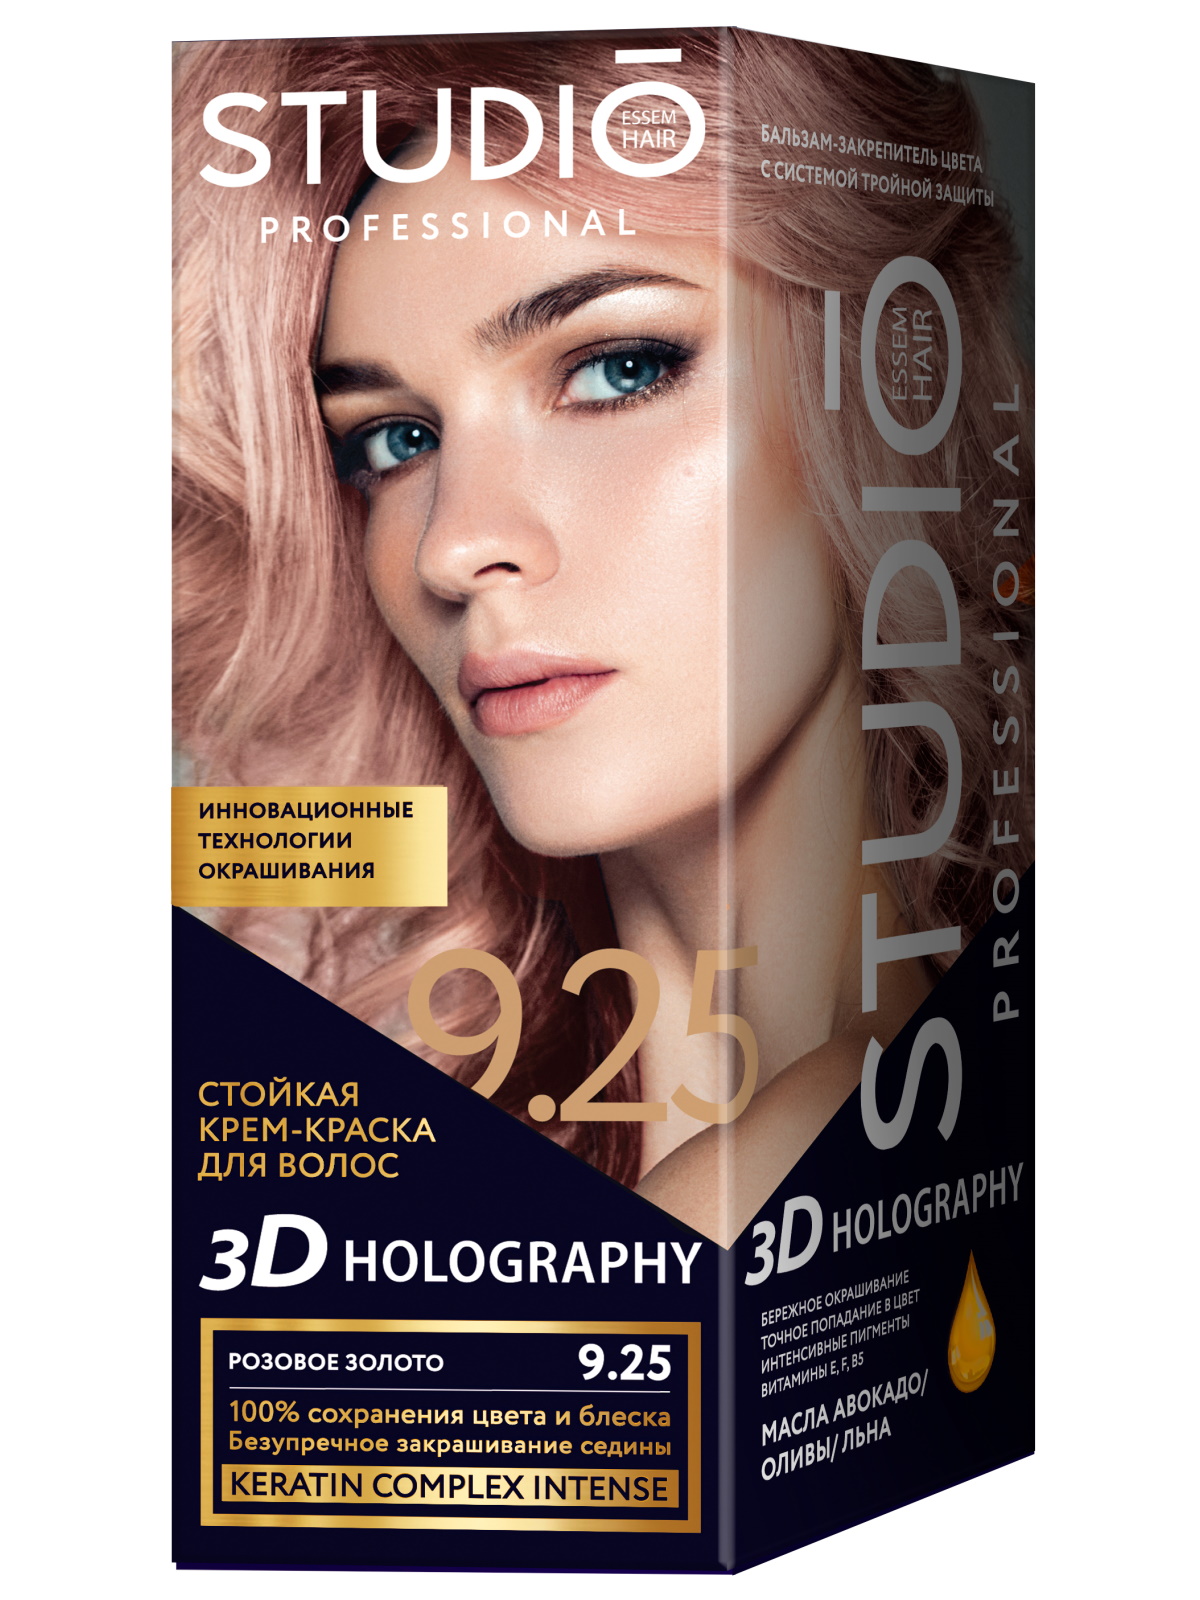 Комплект 3D HOLOGRAPHY для окрашивания STUDIO PROFESSIONAL 9.25 розовое золото 2*50+15 мл studio professional стойкая крем краска для волос 3d holography